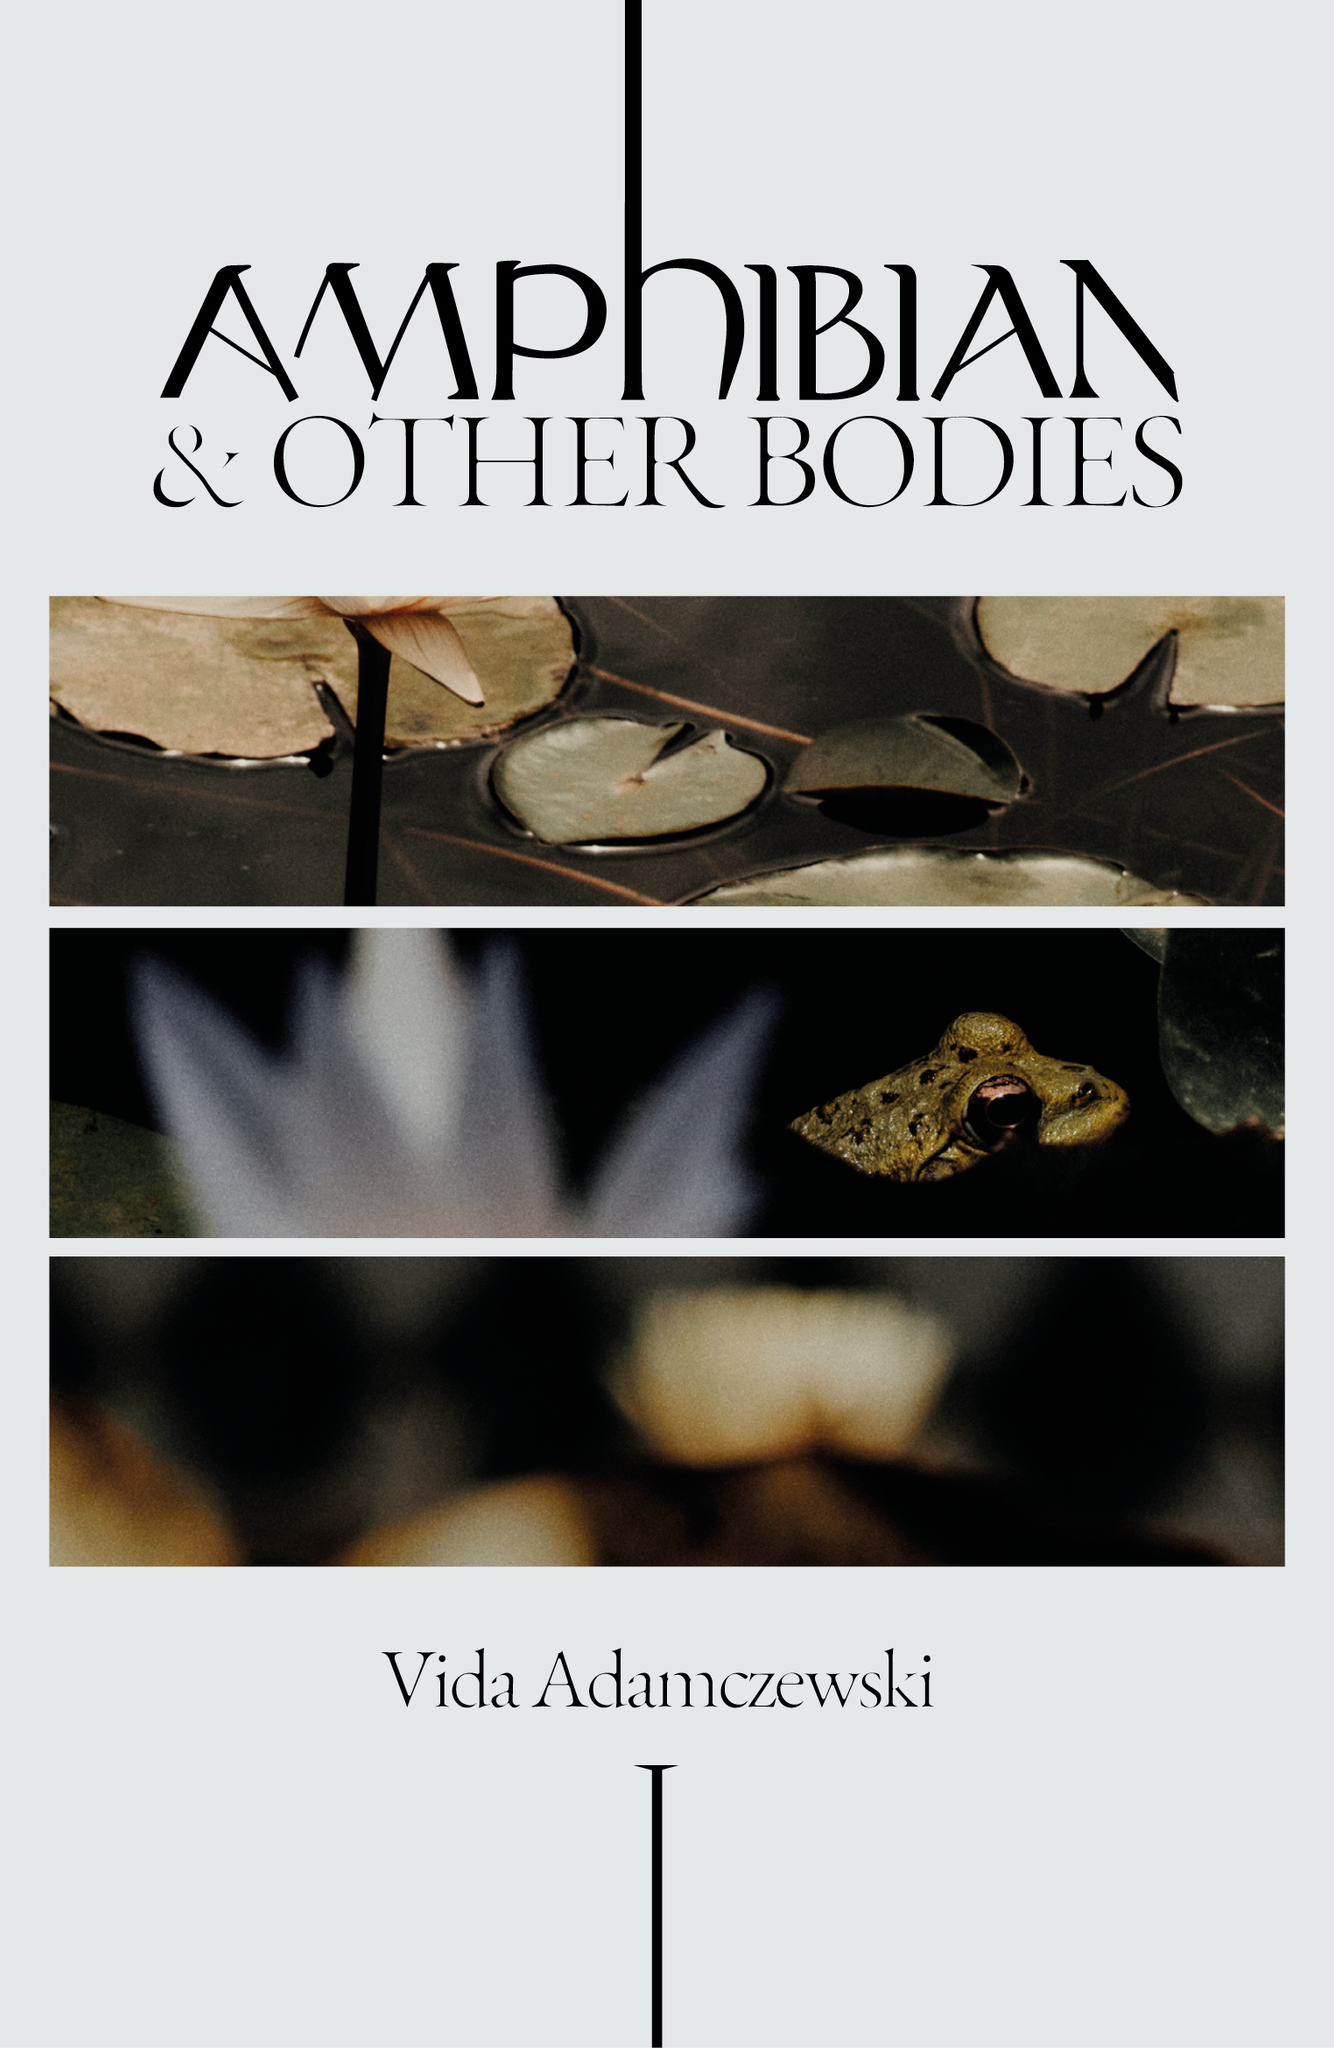 VIDA ADAMCZEWSKI - Amphibian & Other Bodies